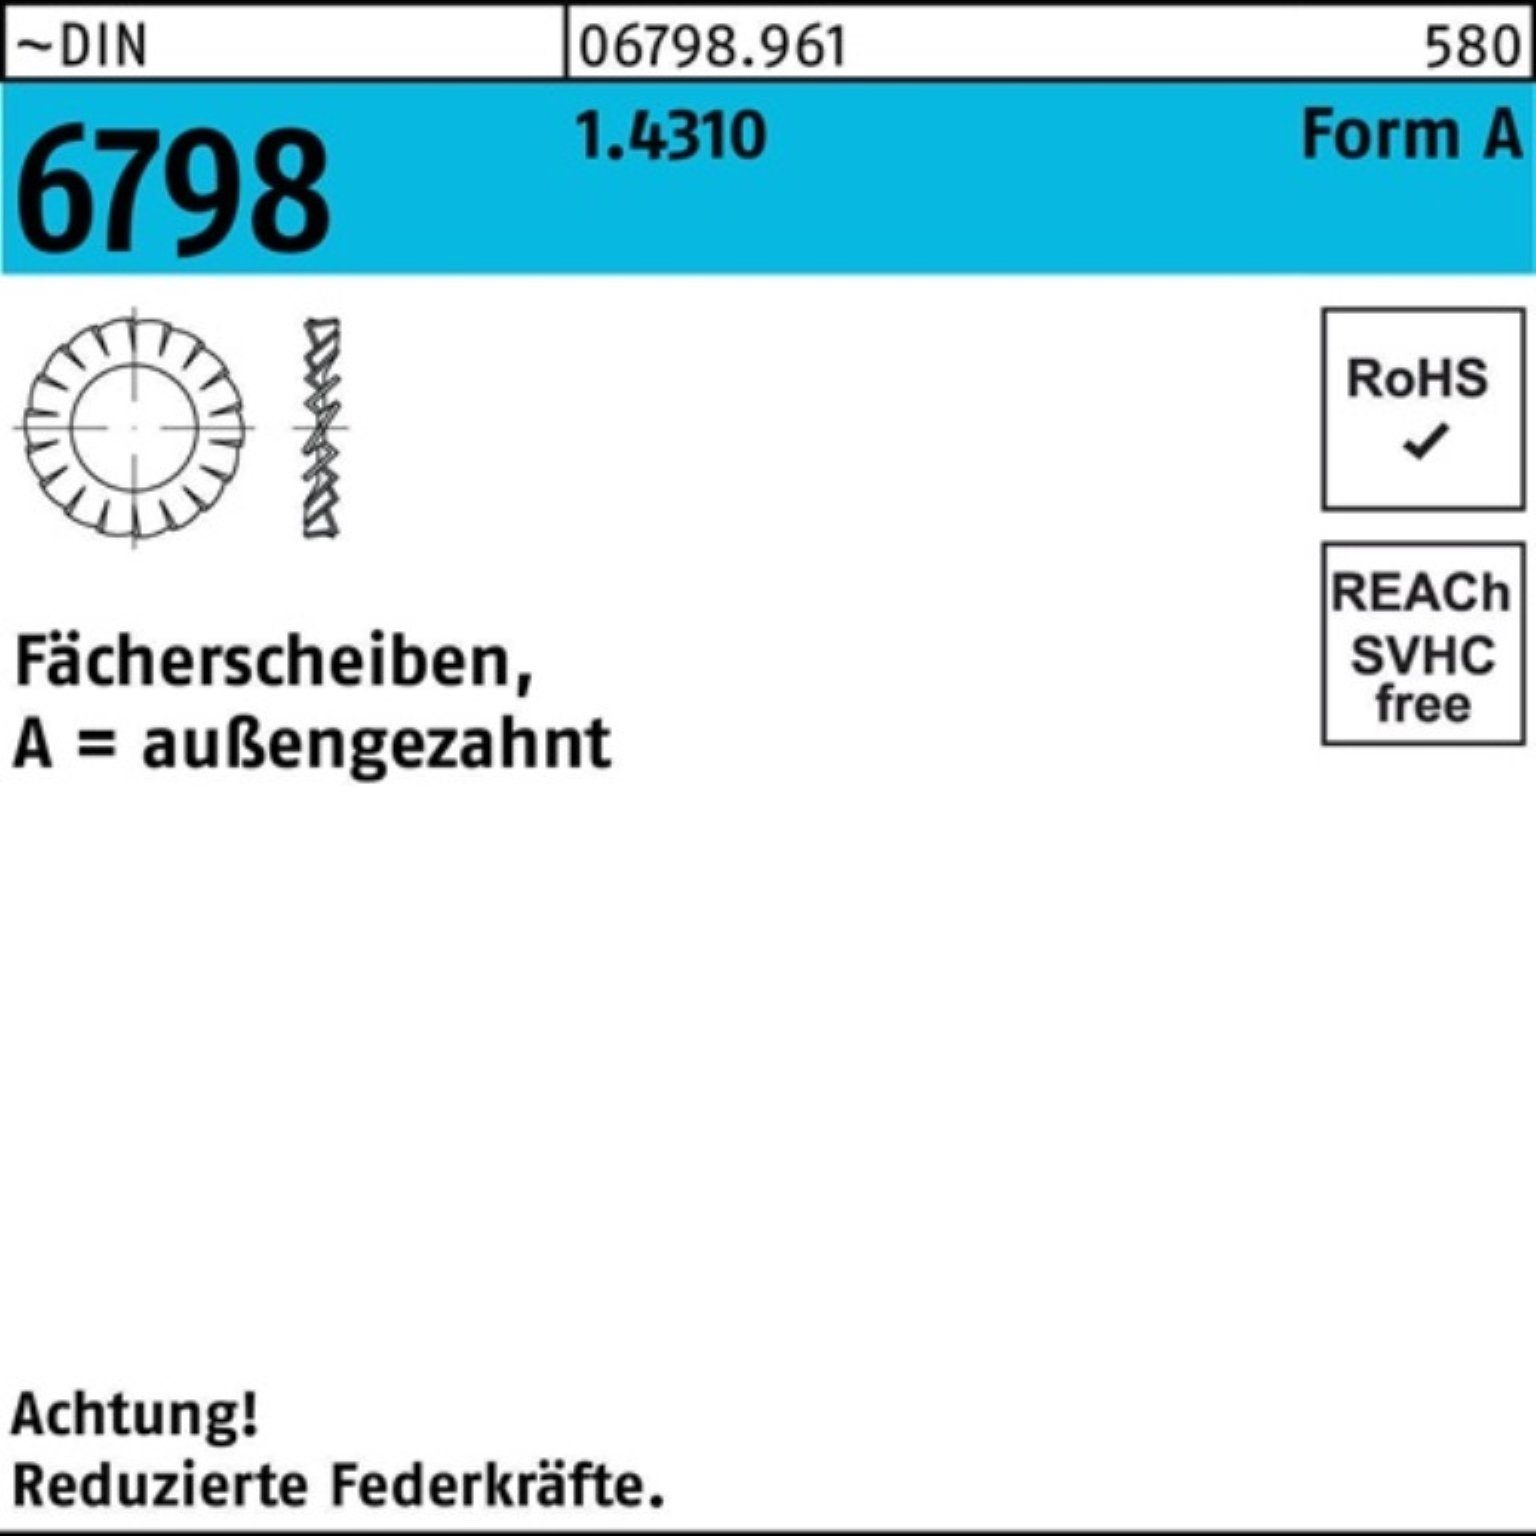 A Reyher Fächerscheibe 17 100er 1.4310 außengezahnt 6798 FormA 50 Fächerscheibe DIN Pack